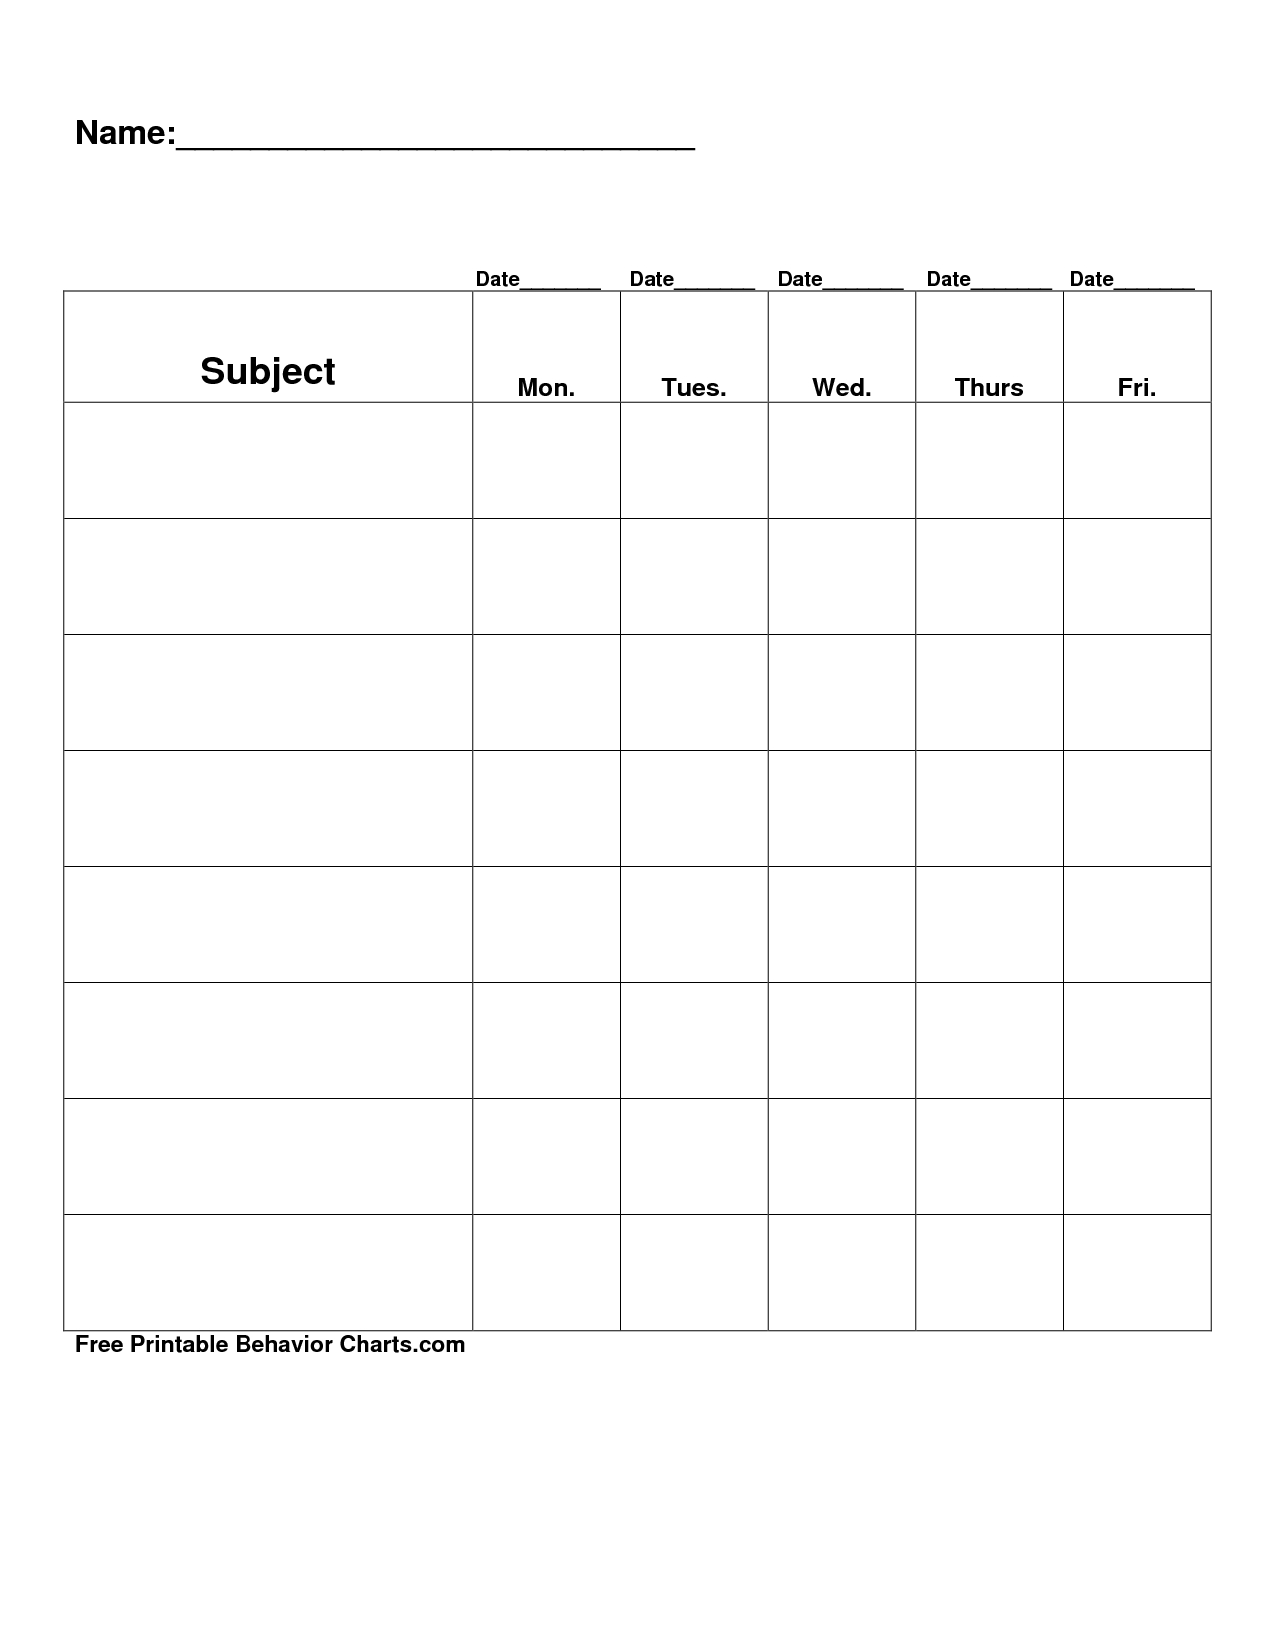 Free Printable Blank Charts | Free Printable Behavior Charts Com - Free Printable Charts For Teachers